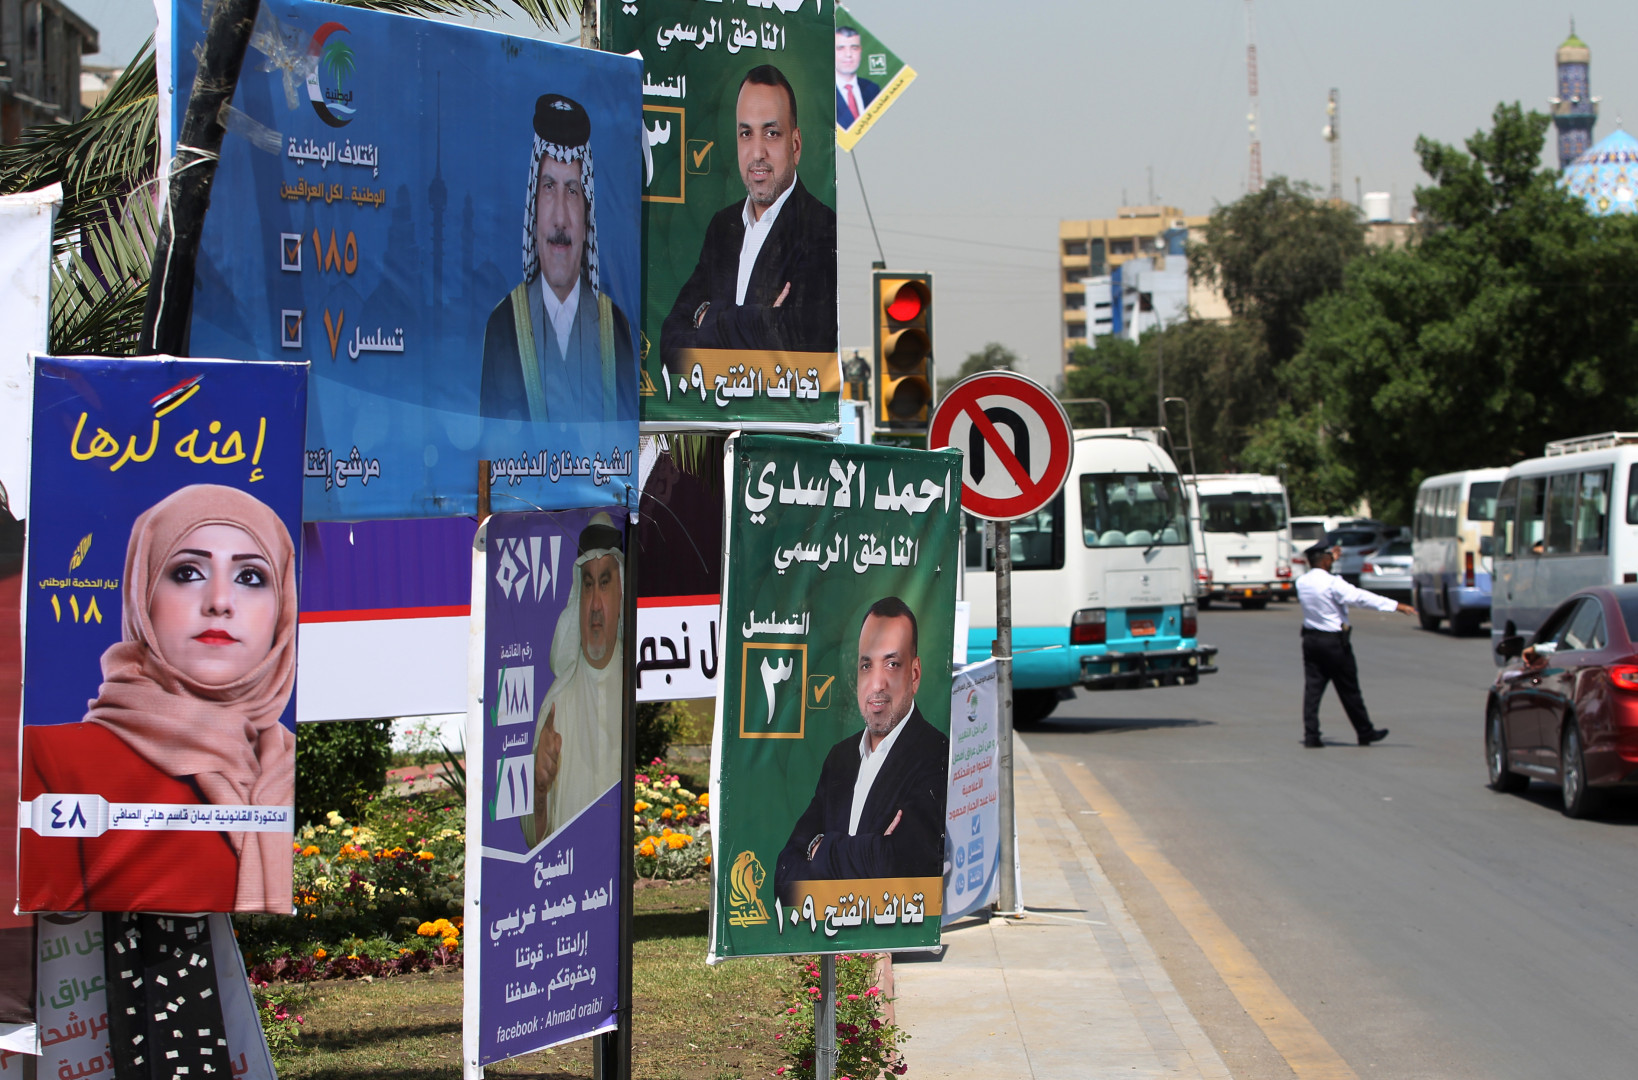 تهديدات بالقتل تجبر مرشحين للانسحاب من سباق الانتخابات في بغداد